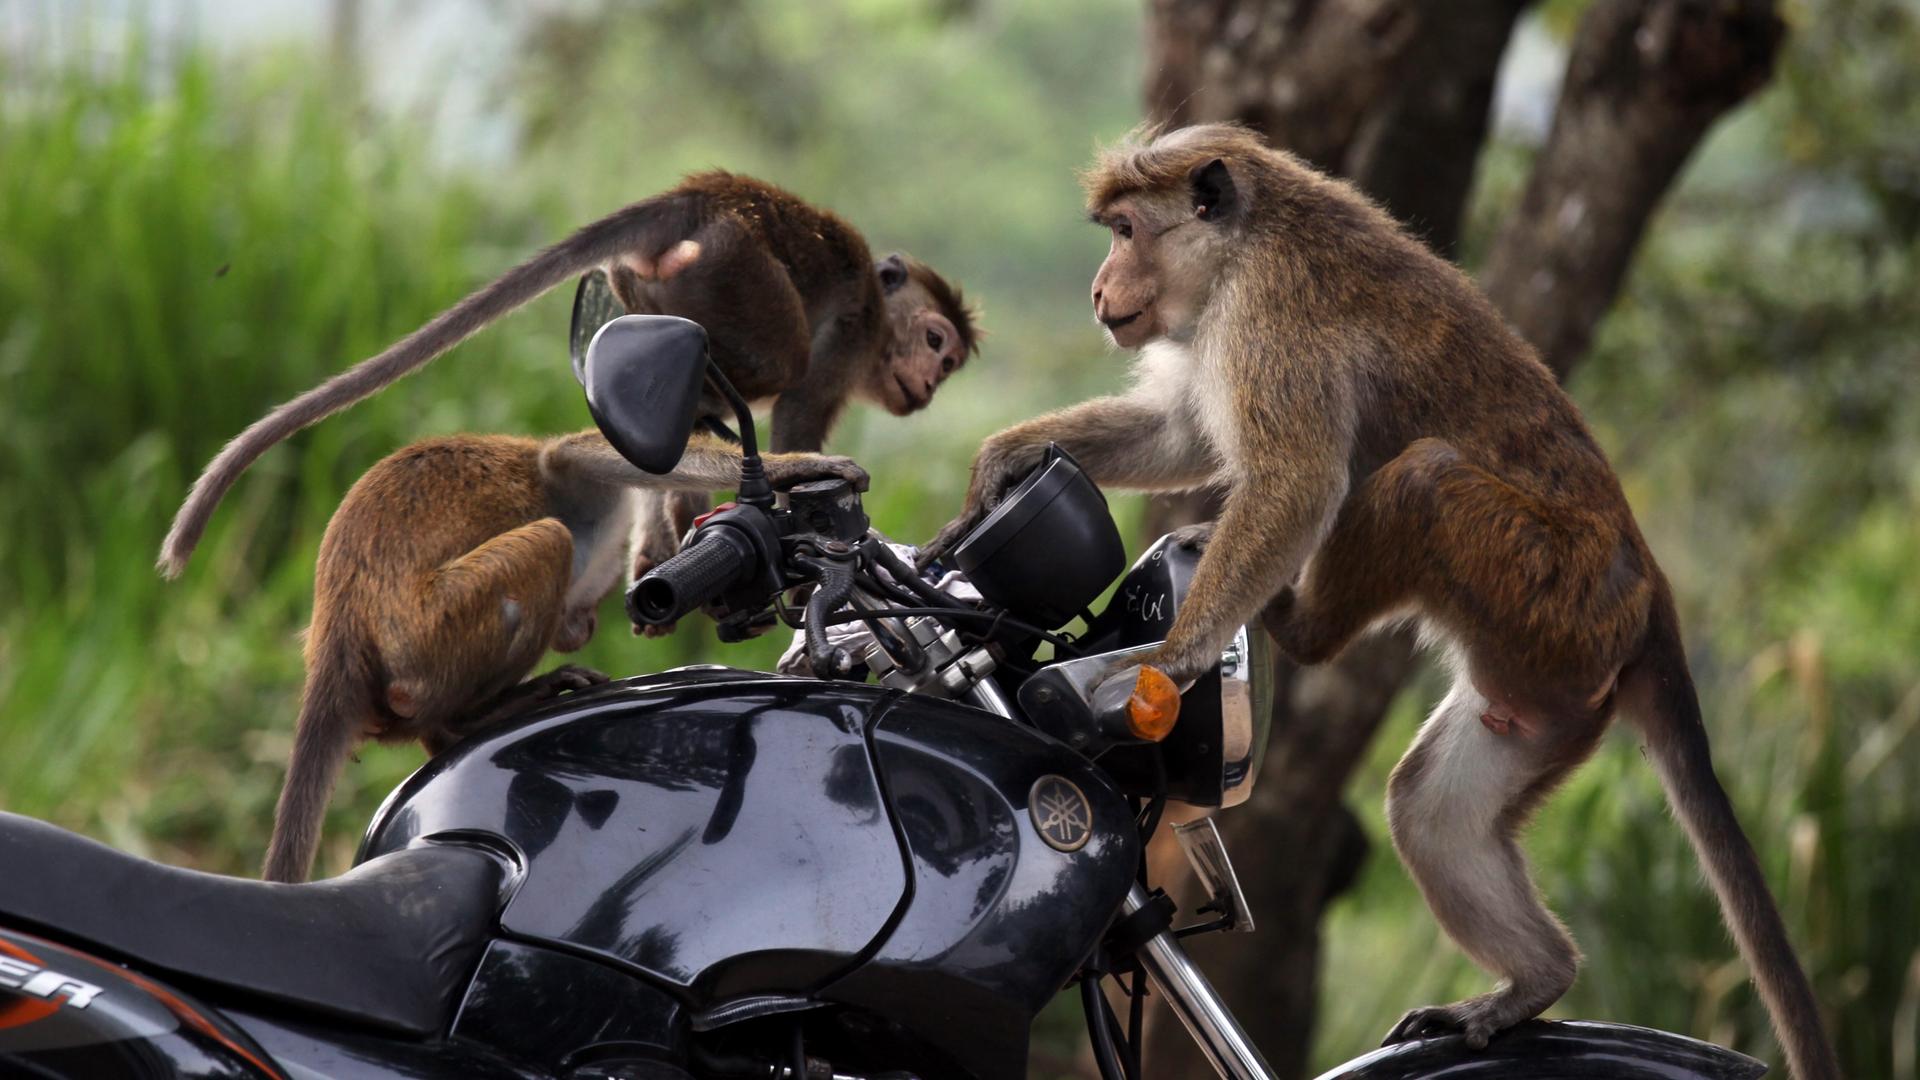 Drei Affen - ein Großer, zwei kleine - sitzen auf einem schwarzen Motorrad. Im Hintergrund sind Bäume und Sträucher zu sehen. Es ist Mittags.